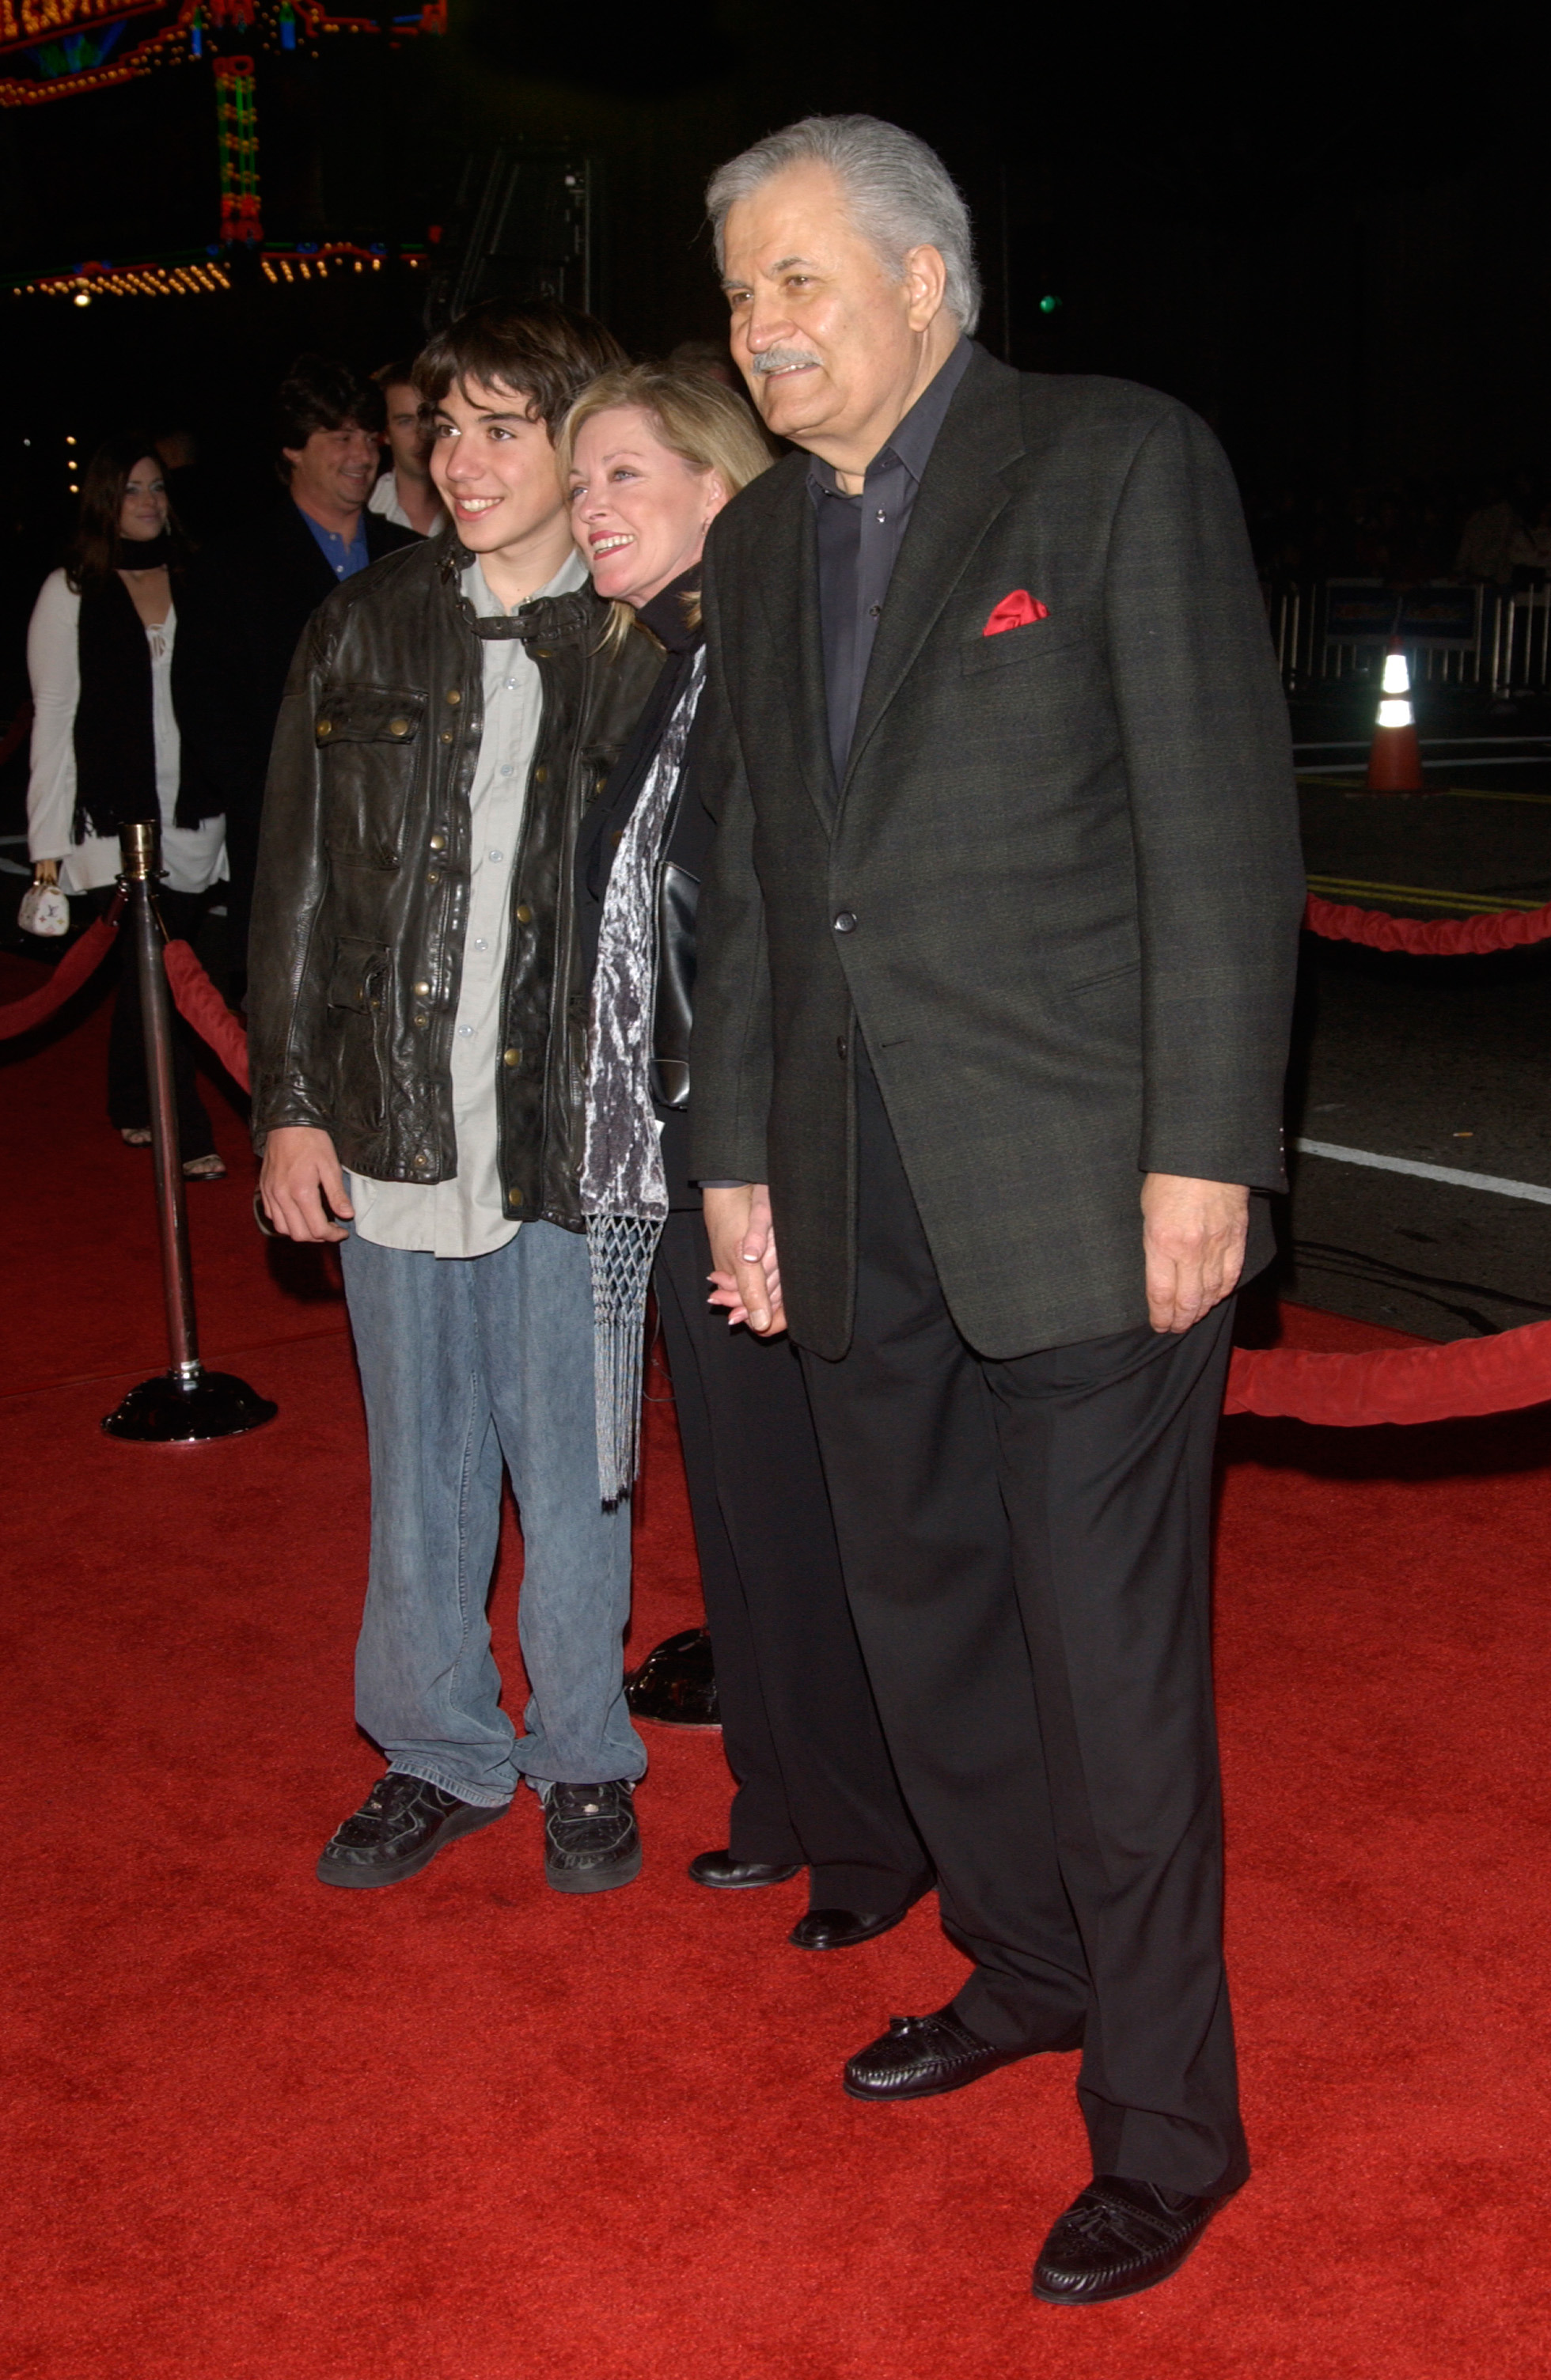 John Aniston con su mujer Sherry Rooney y su hijo Alexander en California en 2004 | Foto: Shutterstock